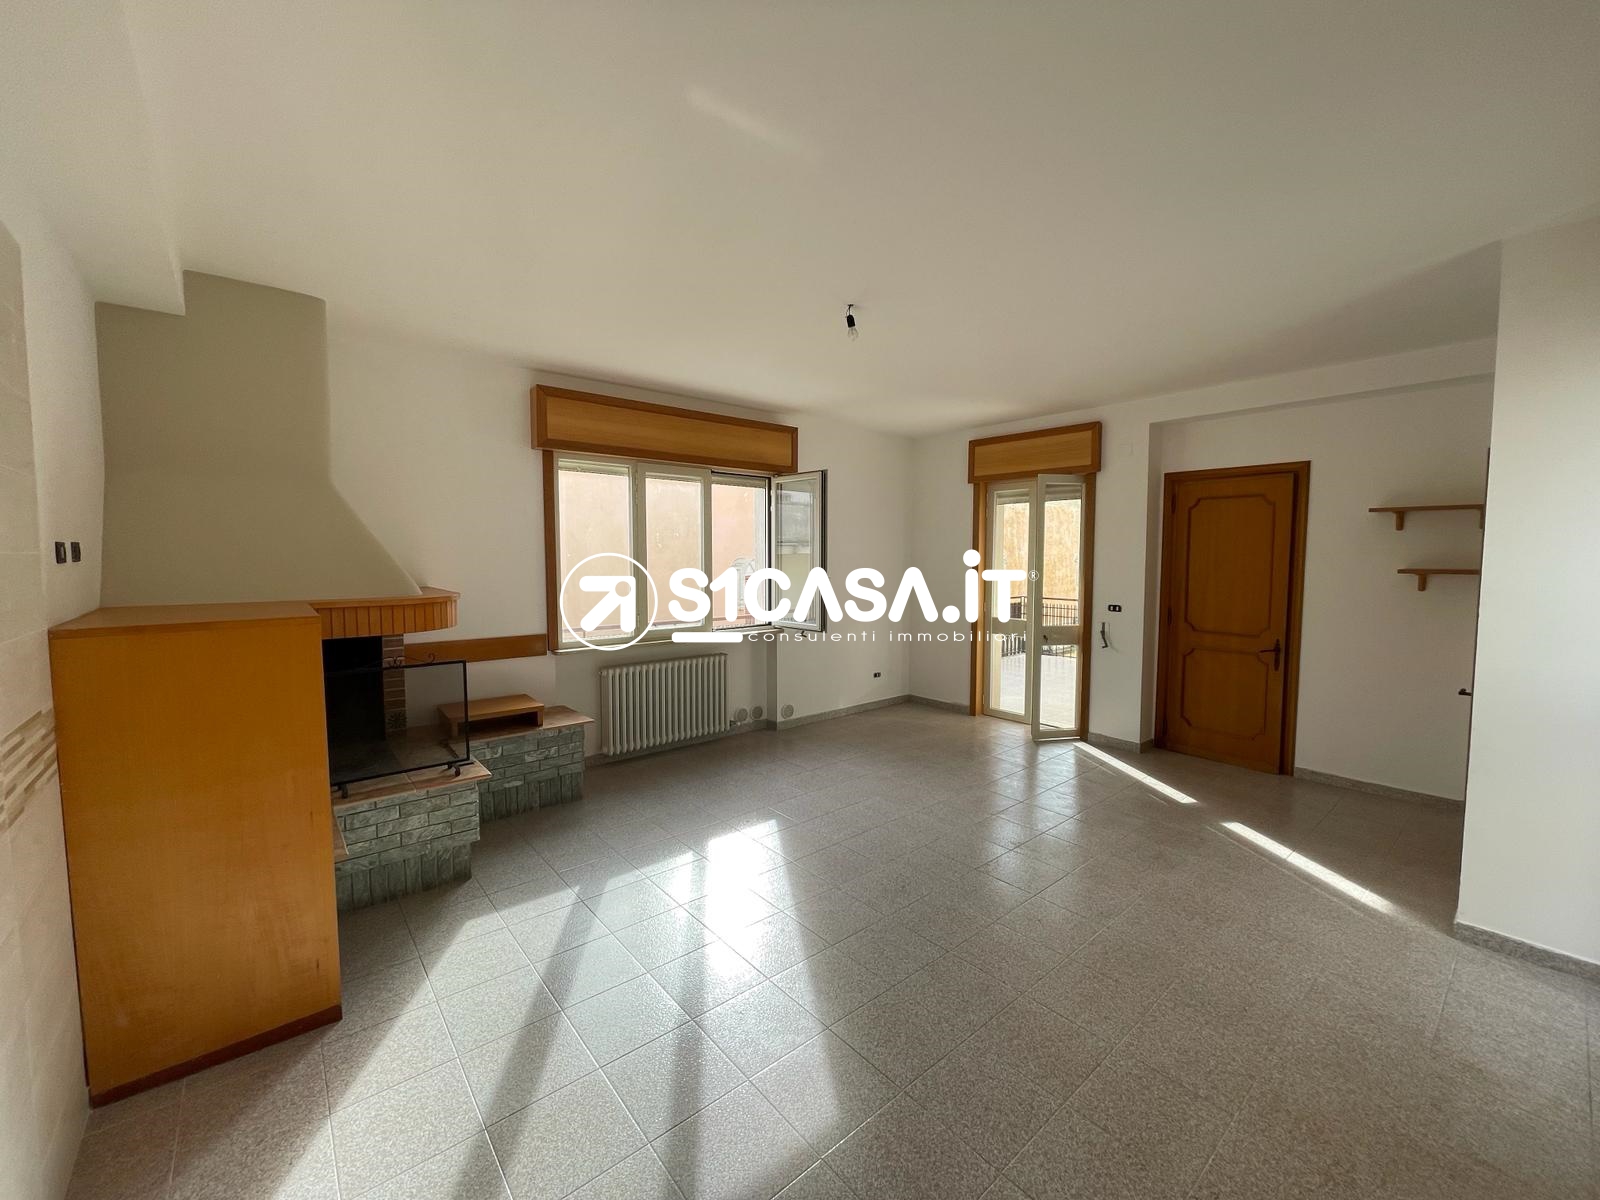 Appartamento in vendita a Galatone, 7 locali, prezzo € 140.000 | PortaleAgenzieImmobiliari.it